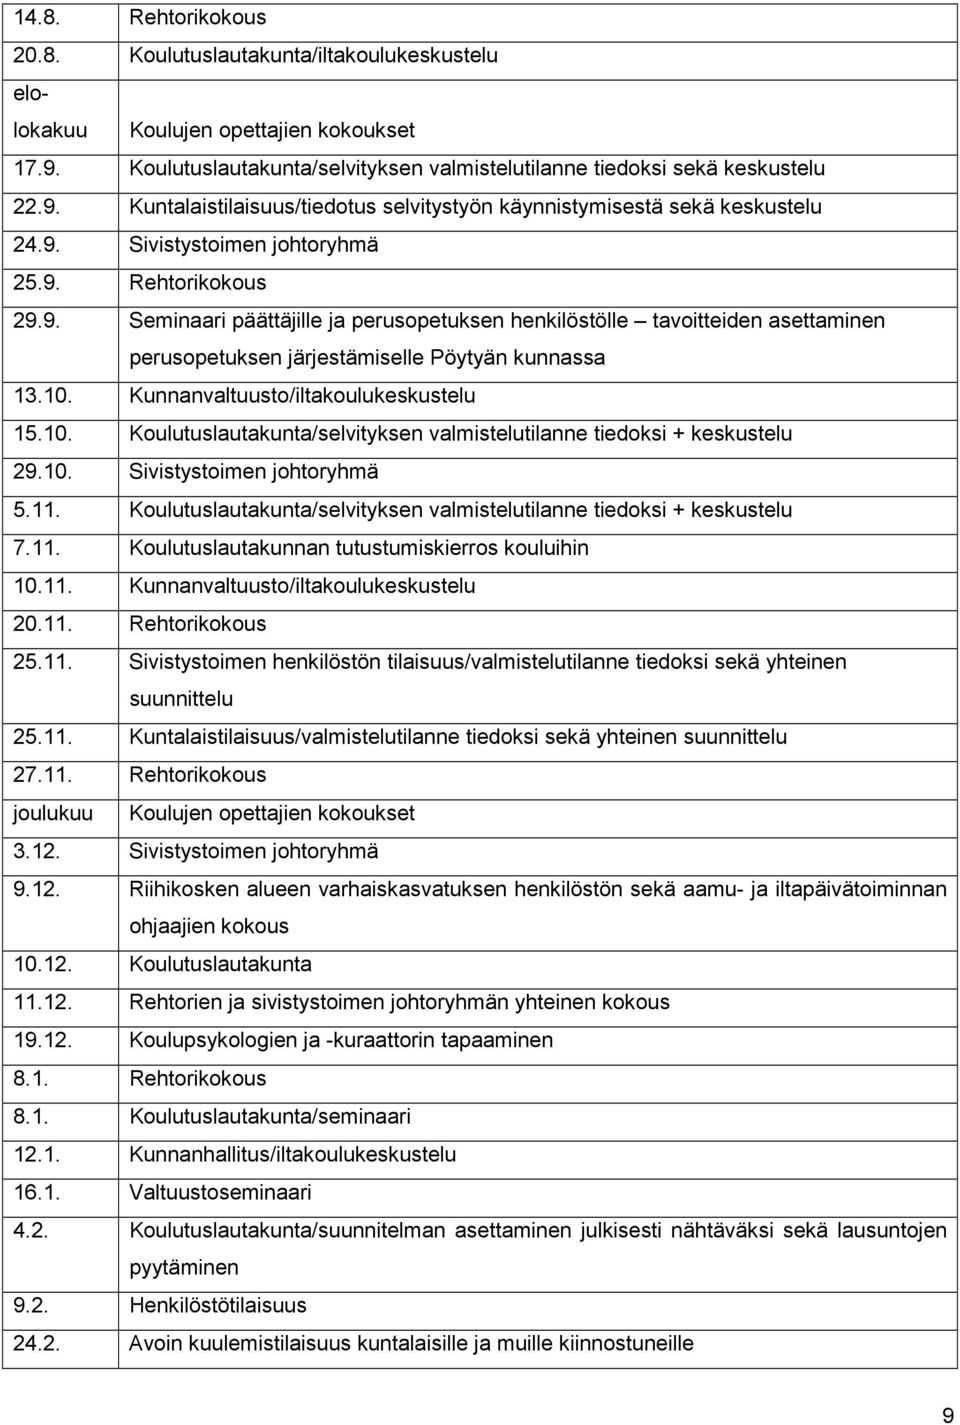 Kunnanvaltuusto/iltakoulukeskustelu 15.10. Koulutuslautakunta/selvityksen valmistelutilanne tiedoksi + keskustelu 29.10. Sivistystoimen johtoryhmä 5.11.